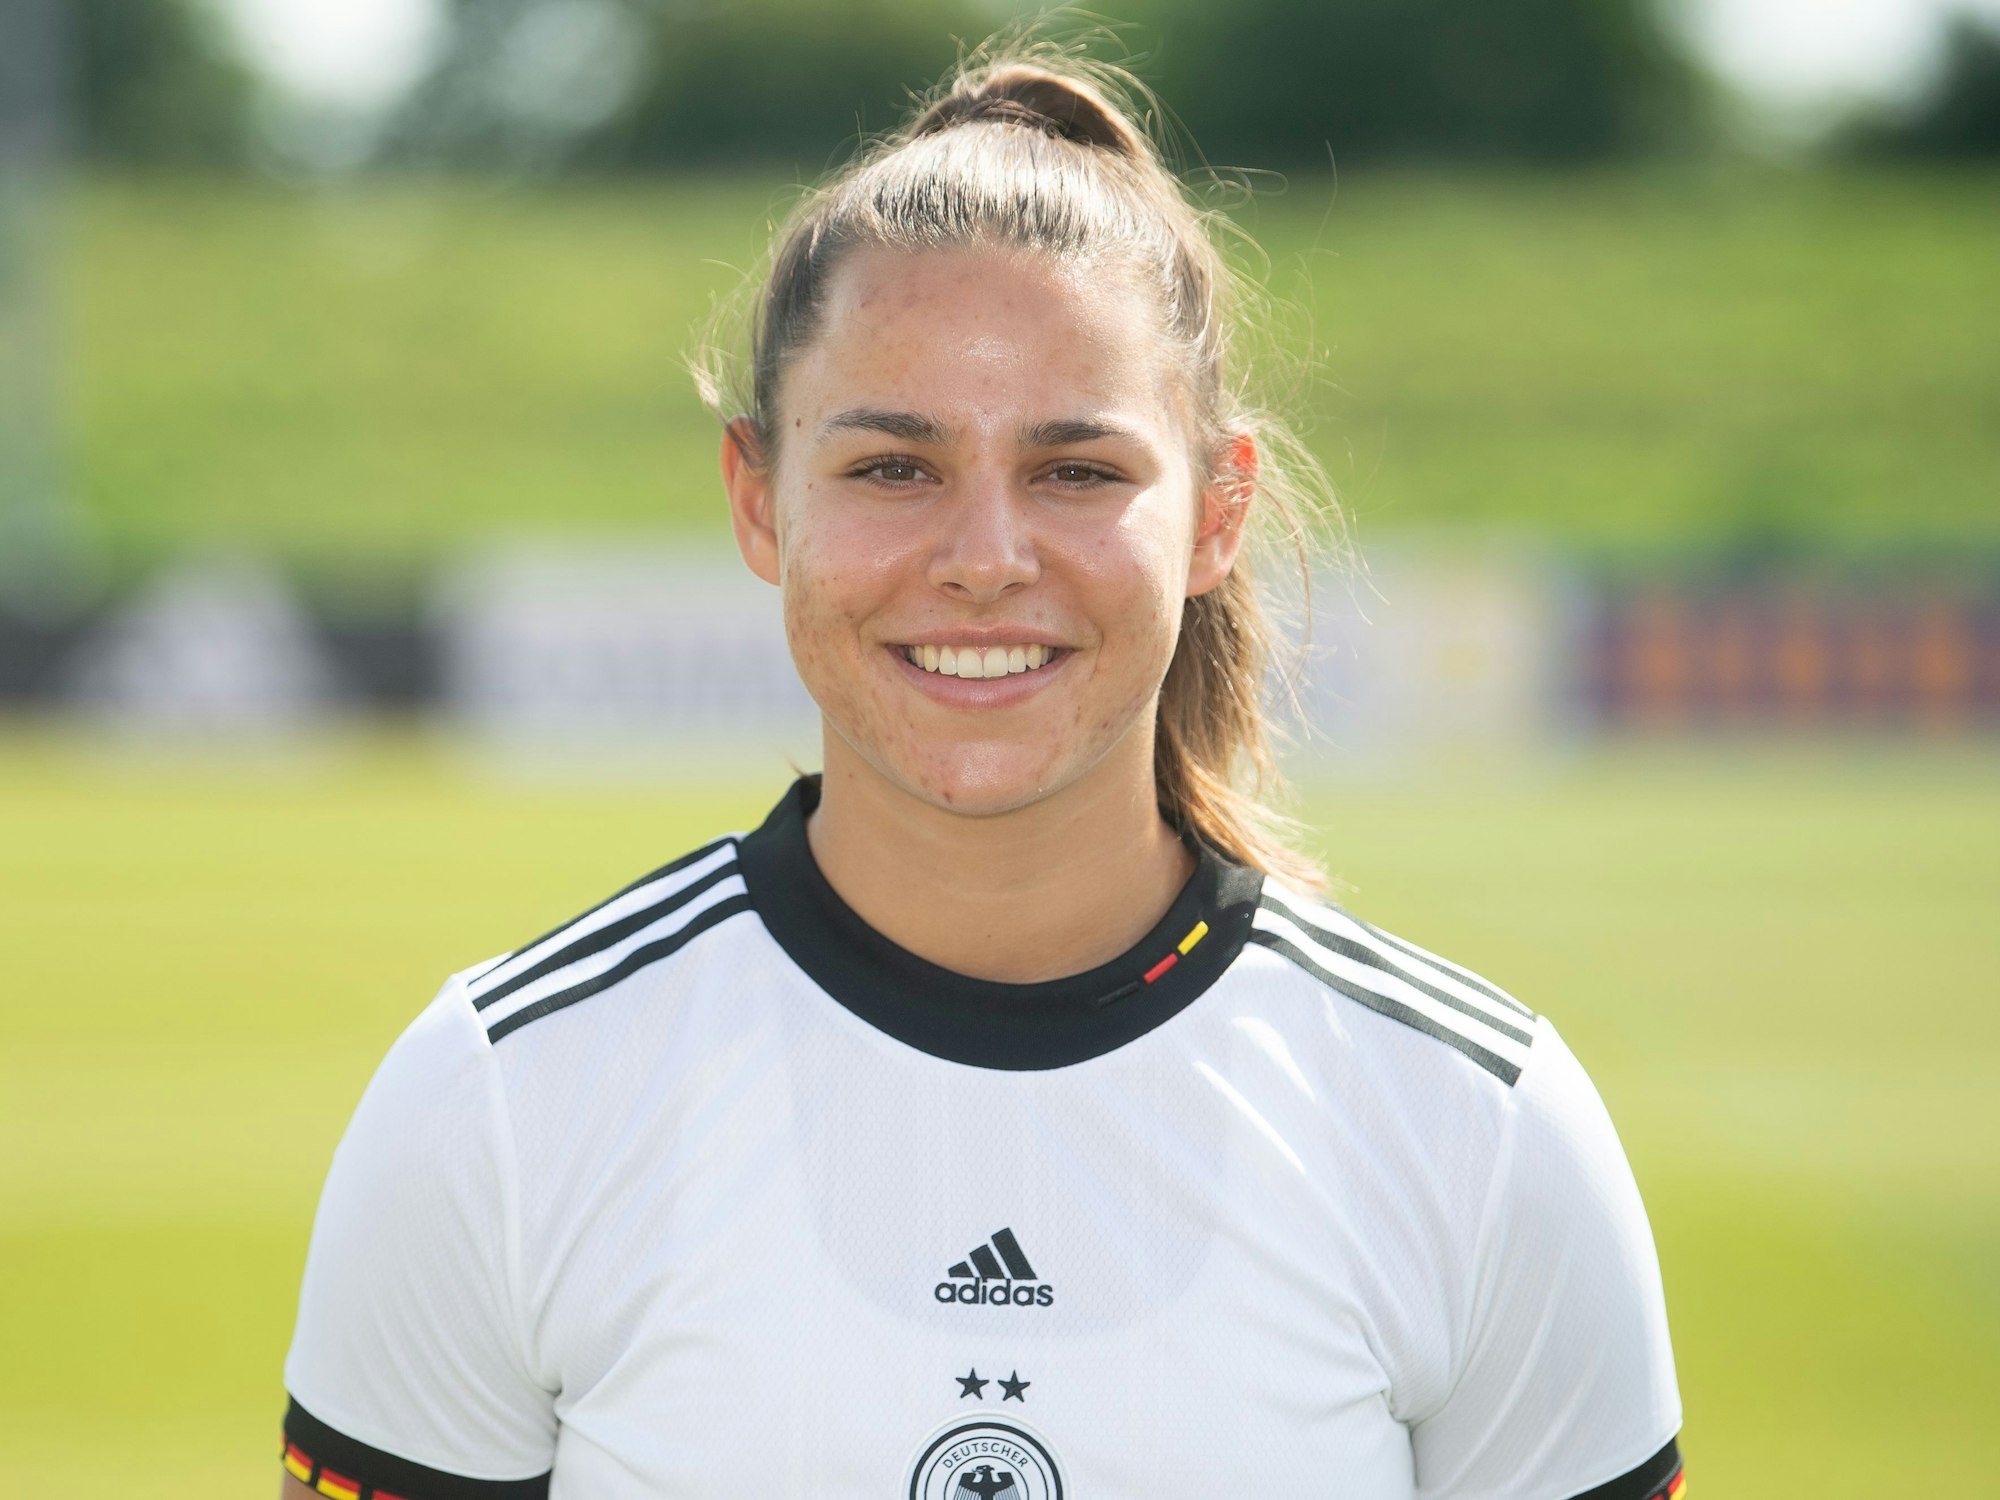 Mittelfeldspielerin Lena Oberdorf bei einem Fototermin der deutschen Frauen-Nationalmannschaft.